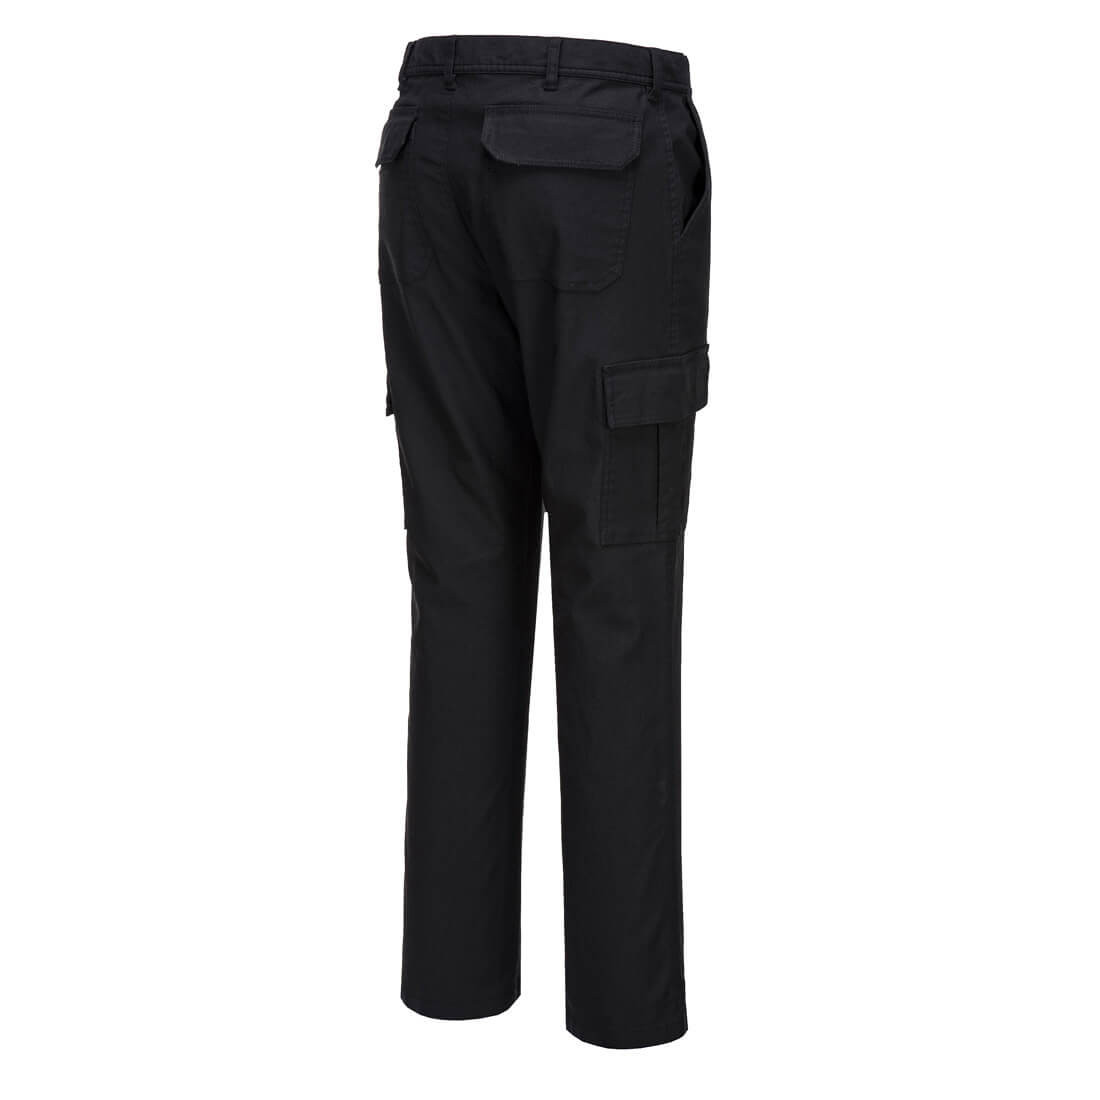 Pantalon combat Slim Stretch - Les vêtements de protection